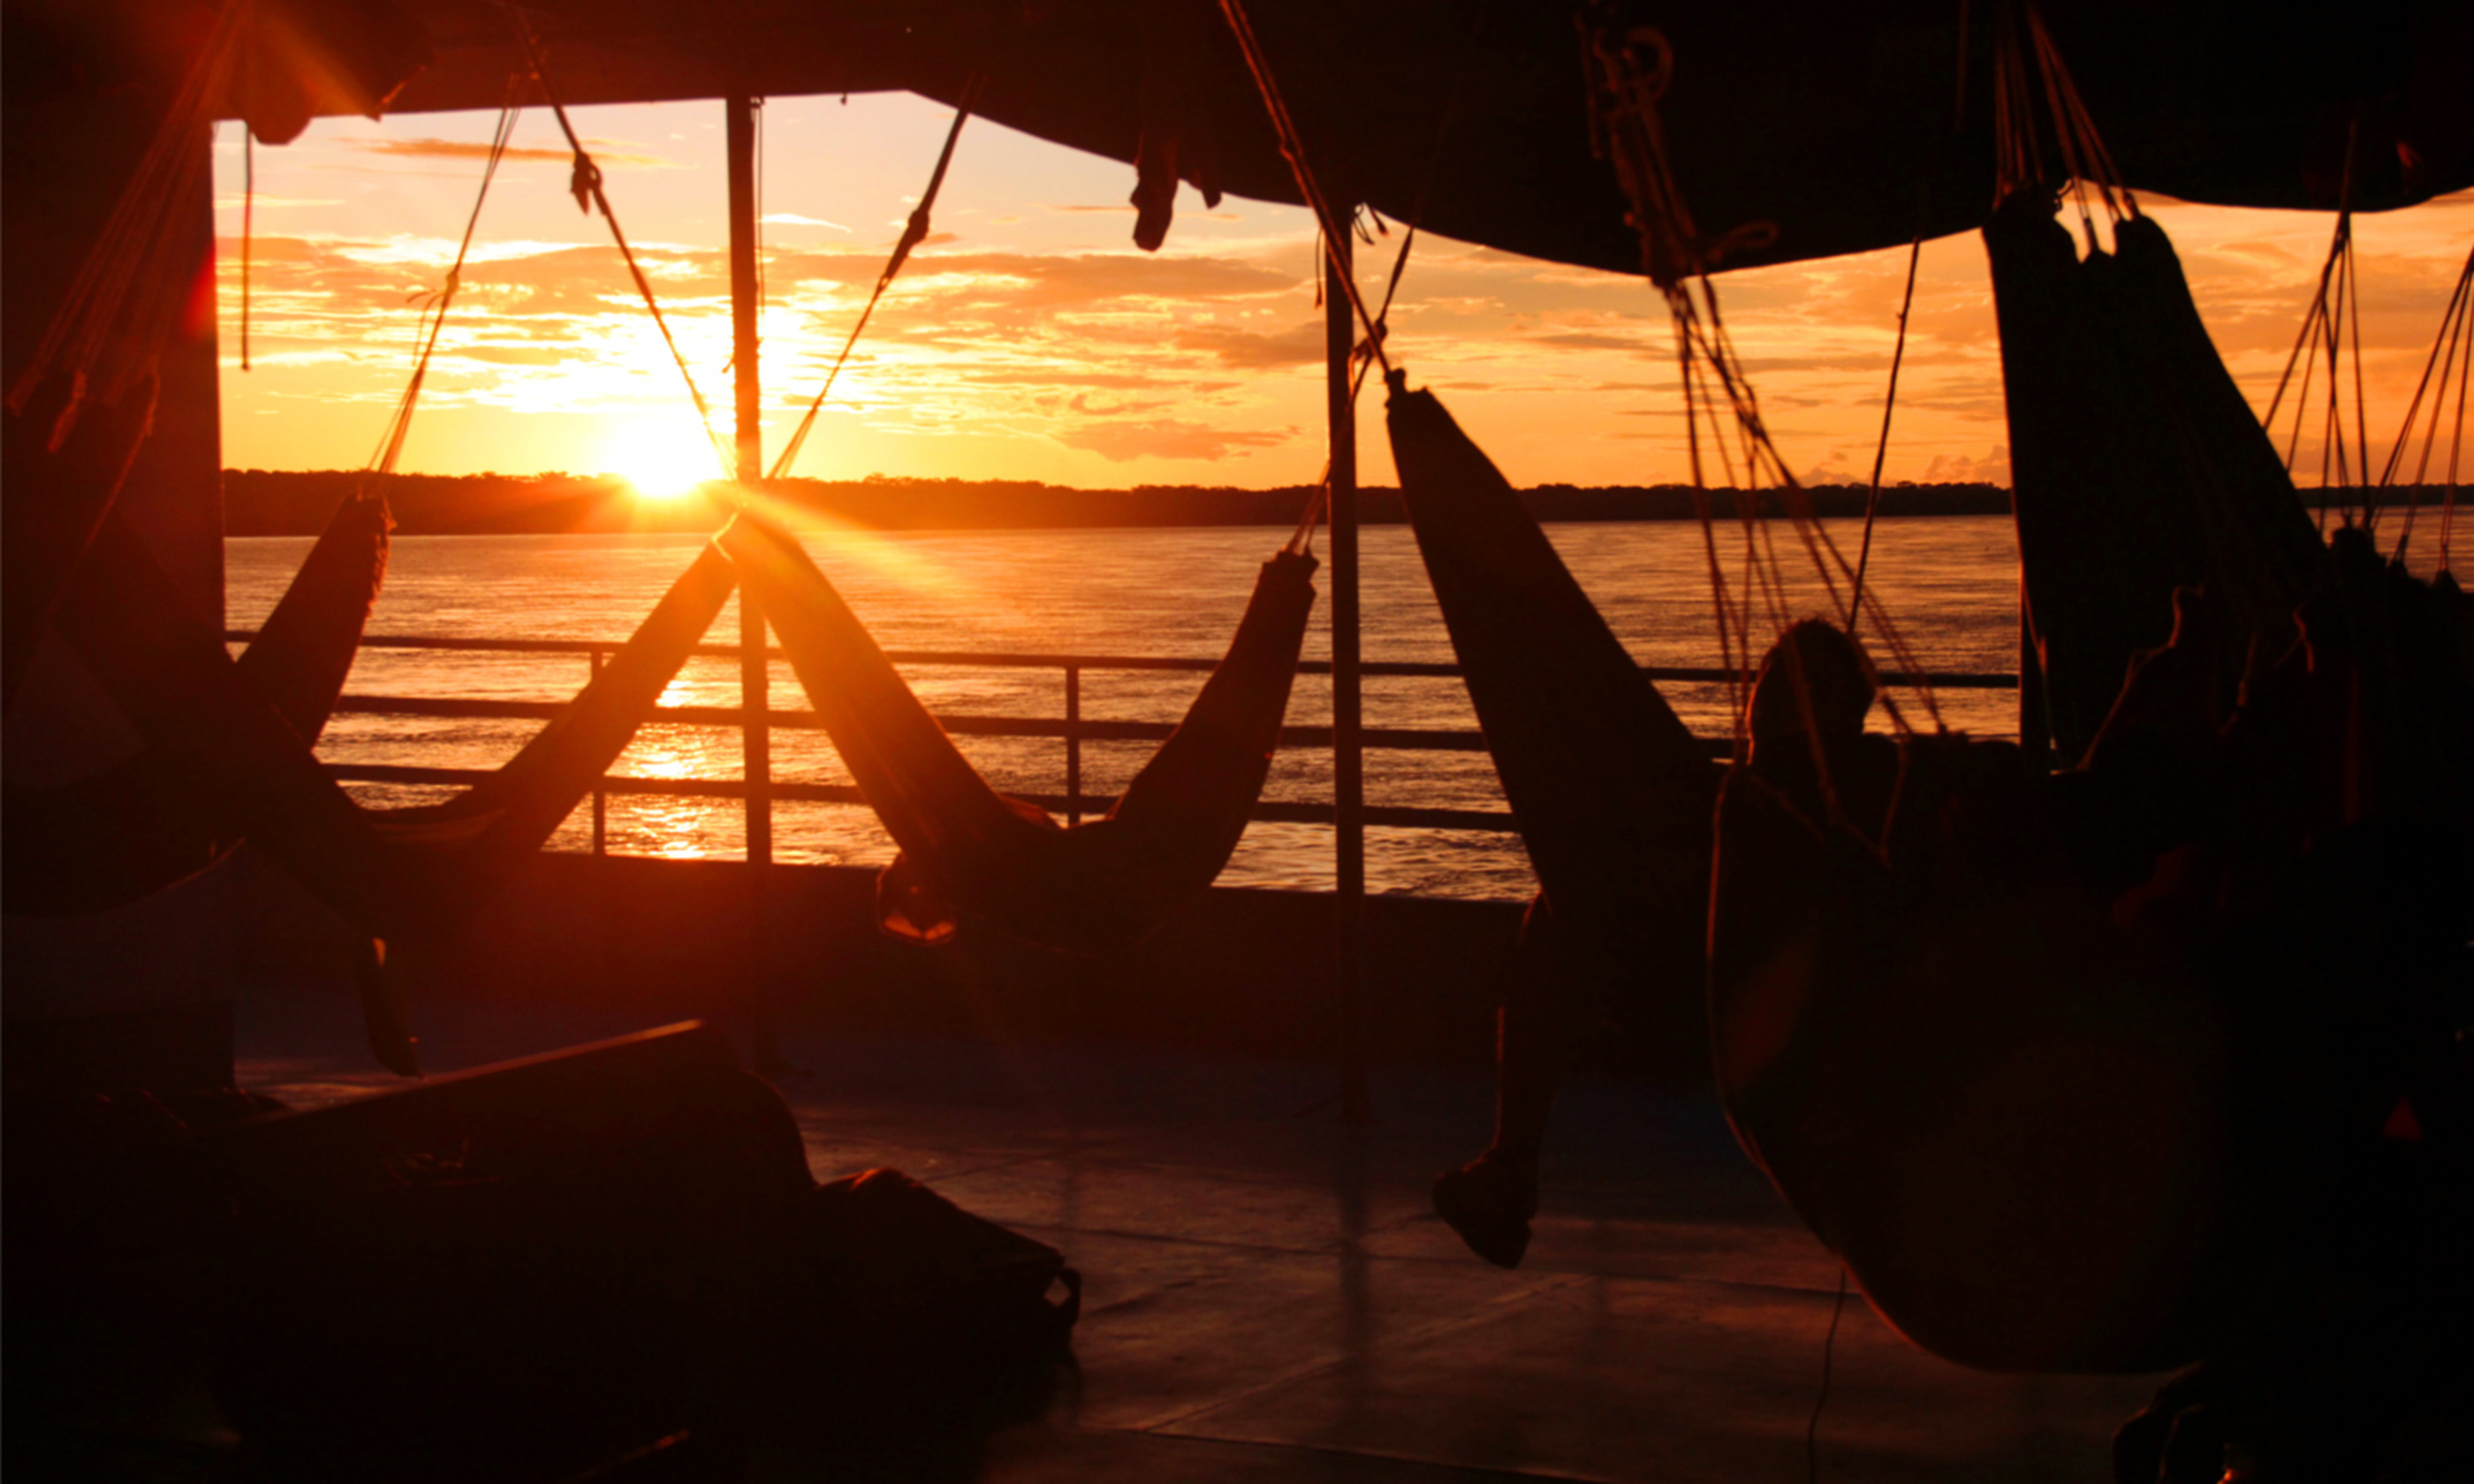 Amazonian sunset from boat hammock (Bobaroundtheworld.com)